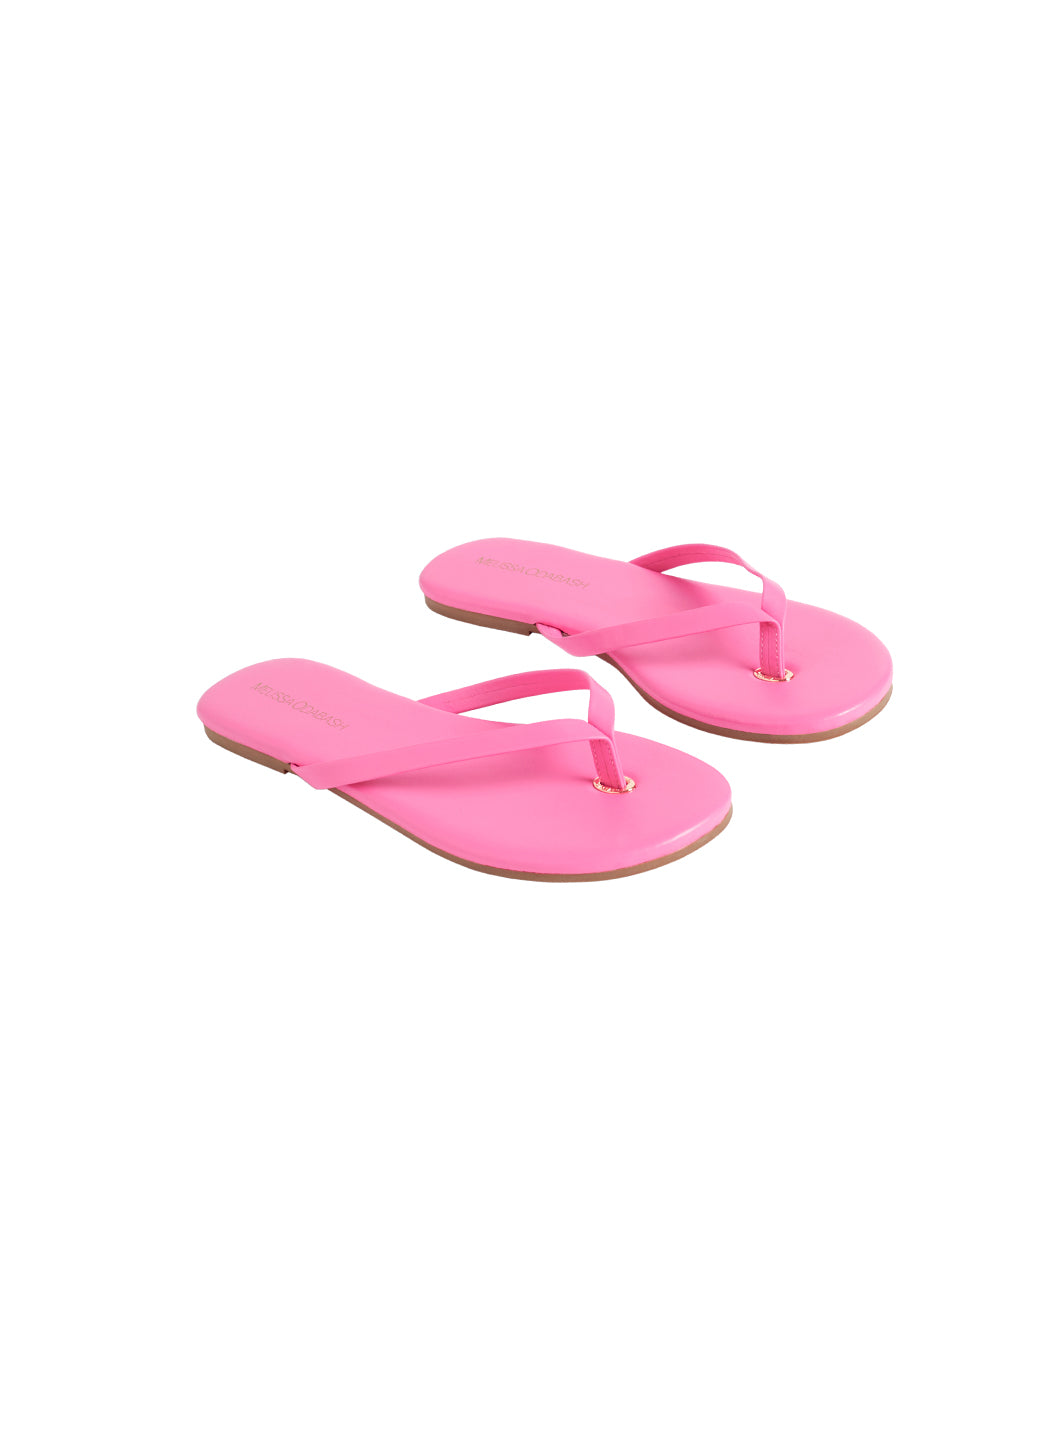 sandals-hot-pink_cutouts